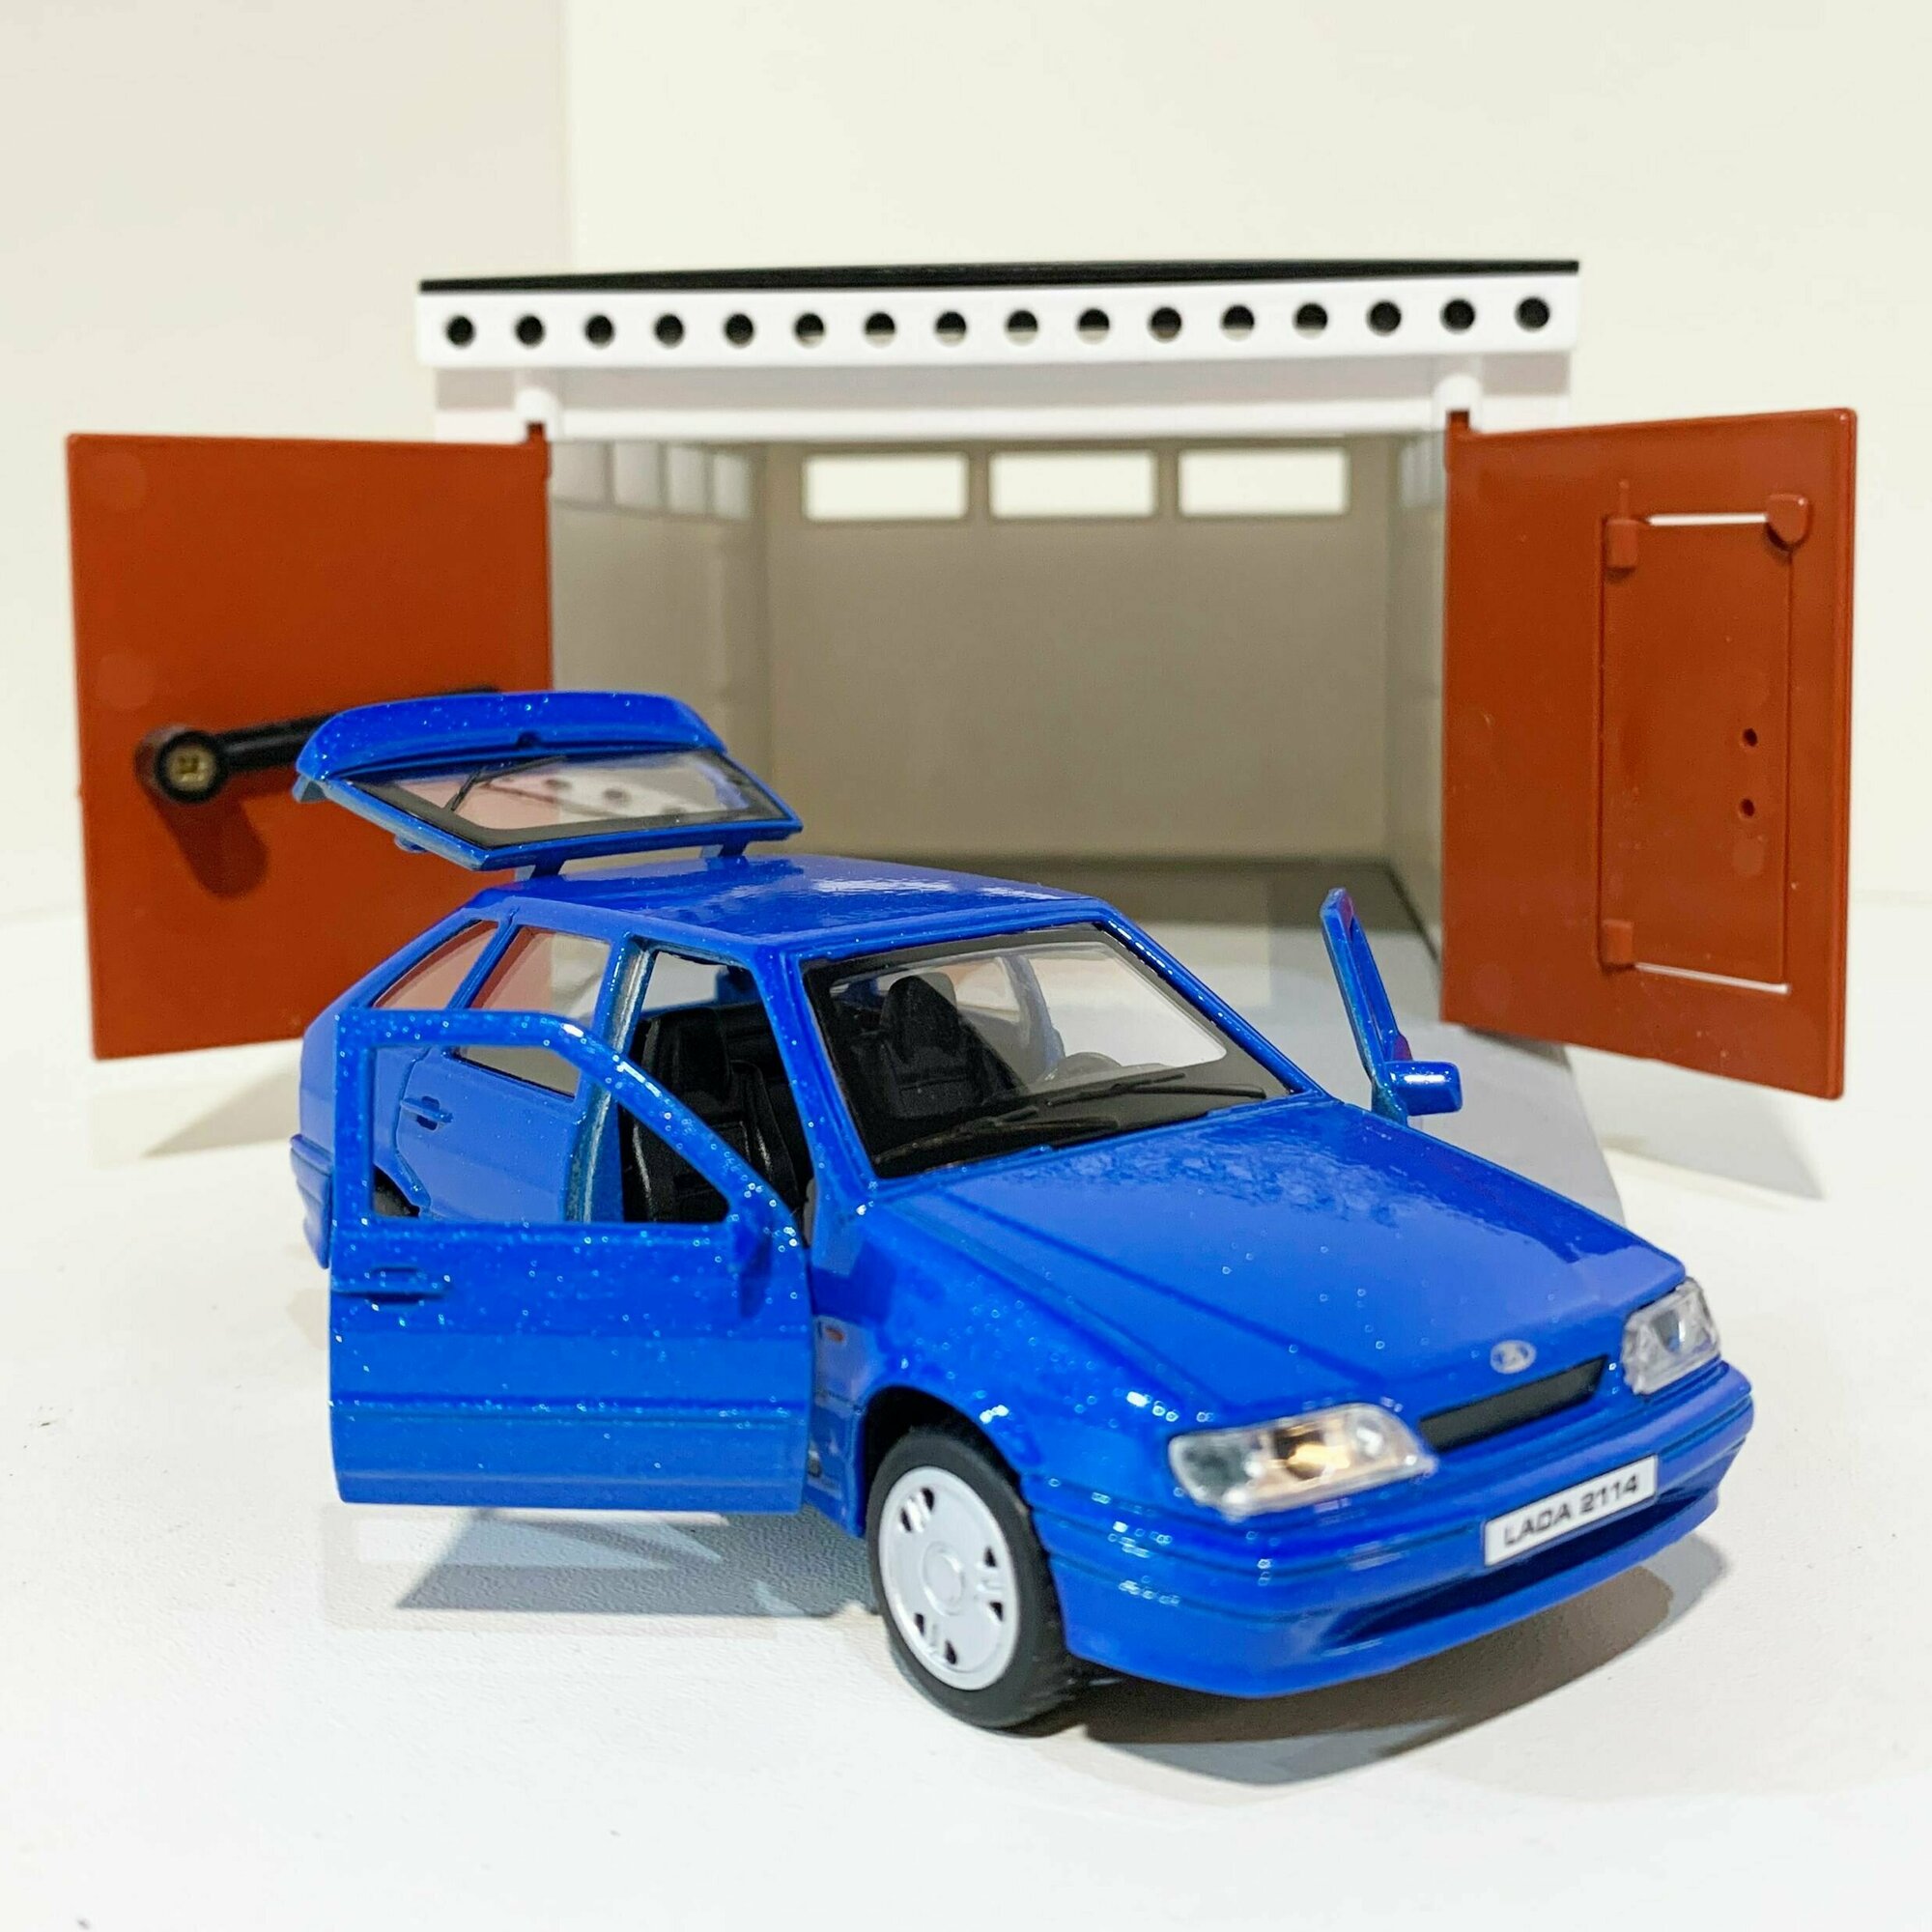 Гараж с распашными воротами и металлическая инерционная машинка ВАЗ 2114 с открывающимися дверями и багажником (синяя)